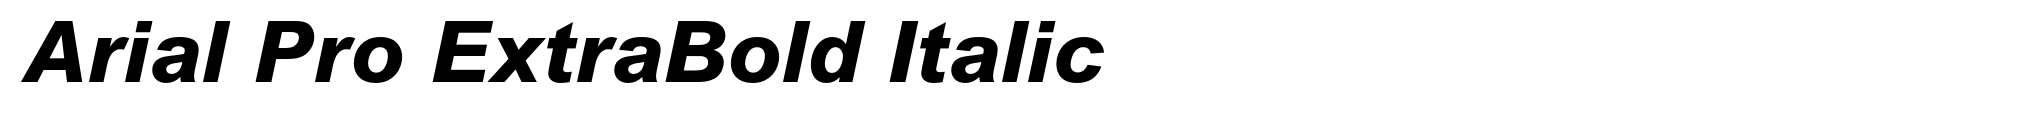 Arial Pro ExtraBold Italic image